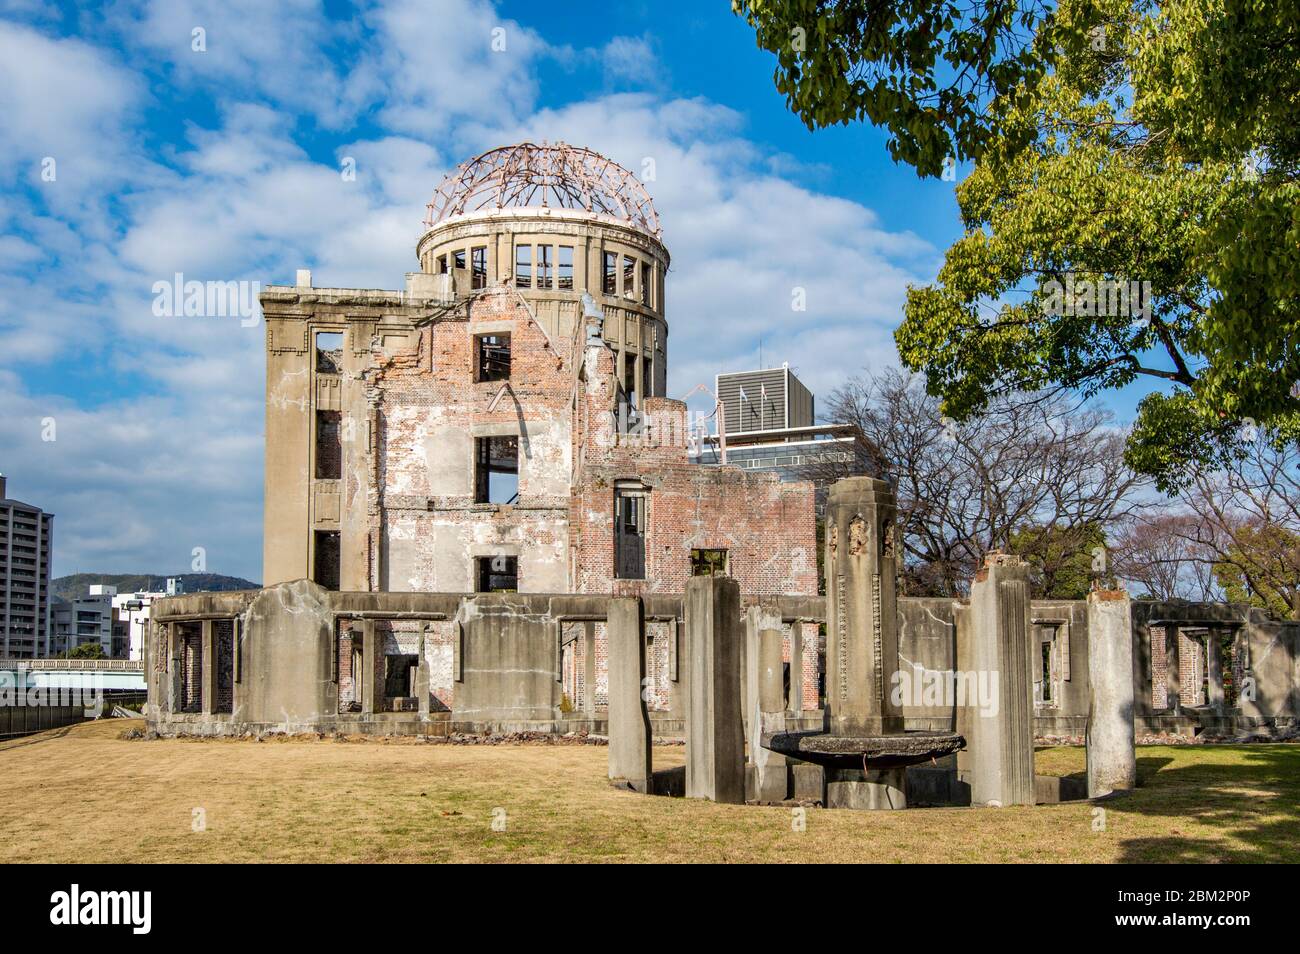 Hiroshima / Japon - 21 décembre 2017 : le dôme de la bombe atomique au Mémorial de la paix d'Hiroshima, site du patrimoine mondial de l'UNESCO, mémorial aux victimes d'une attaque nucléaire Banque D'Images